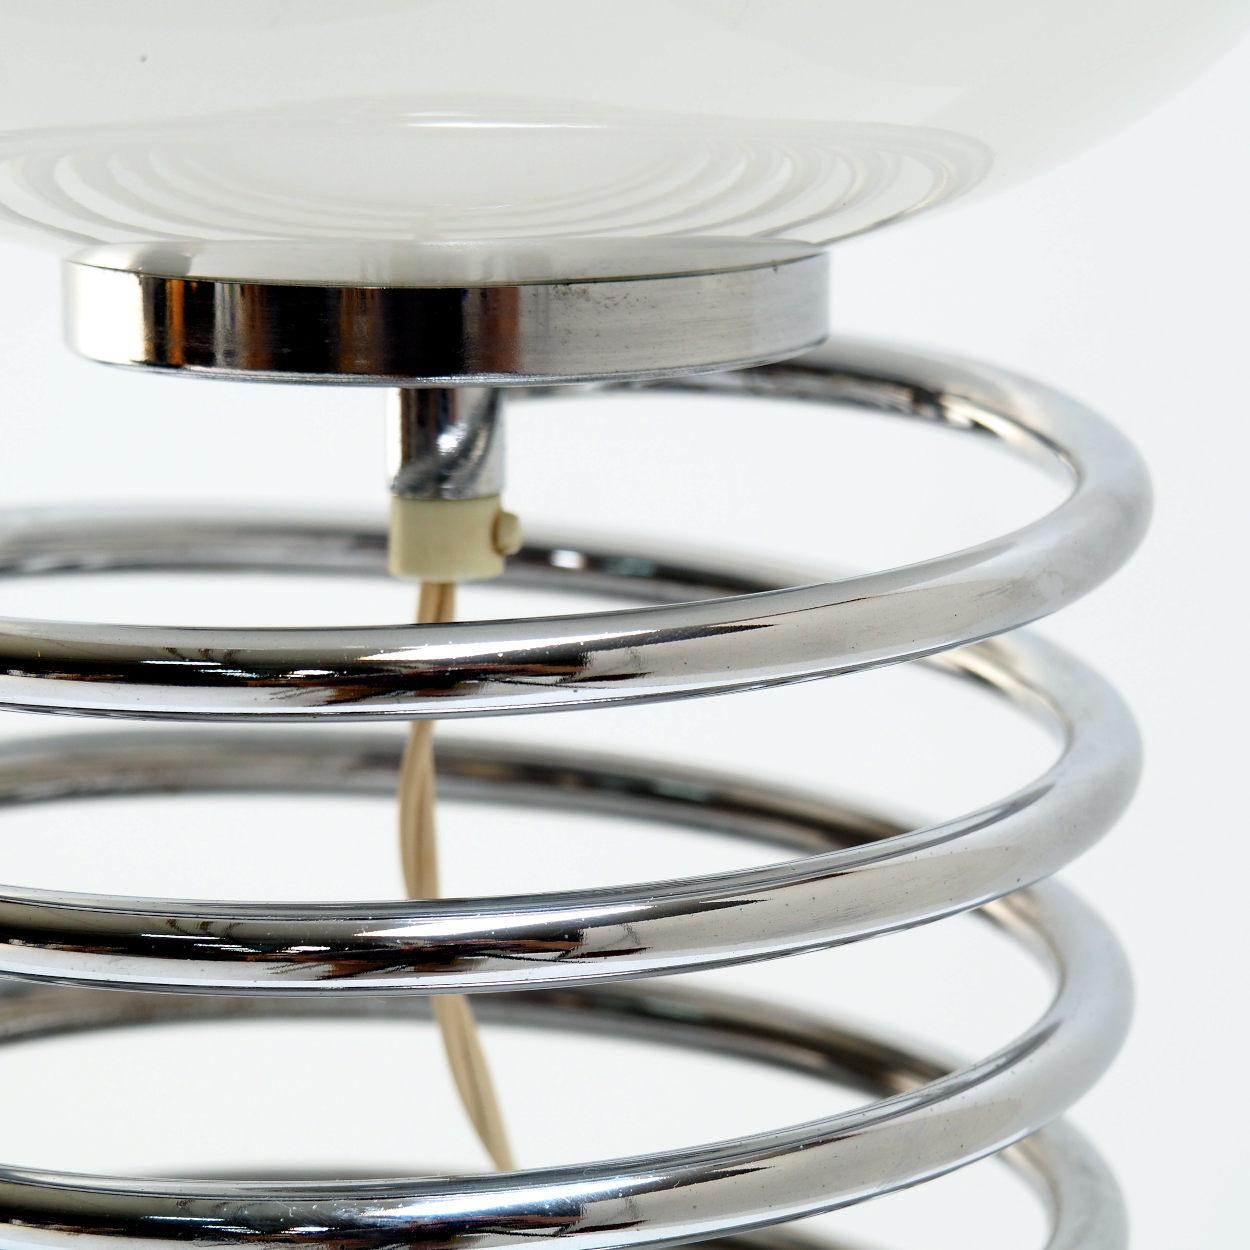 Lampe magnifiquement conçue dans le style de la célèbre lampe à spirale qu'Ingo Maurer a créée pour sa société Design/One. Maurer a conçu ce nouveau type de lampe à la fin des années 1960.

Bien entendu, comme la plupart des bonnes idées, la lampe